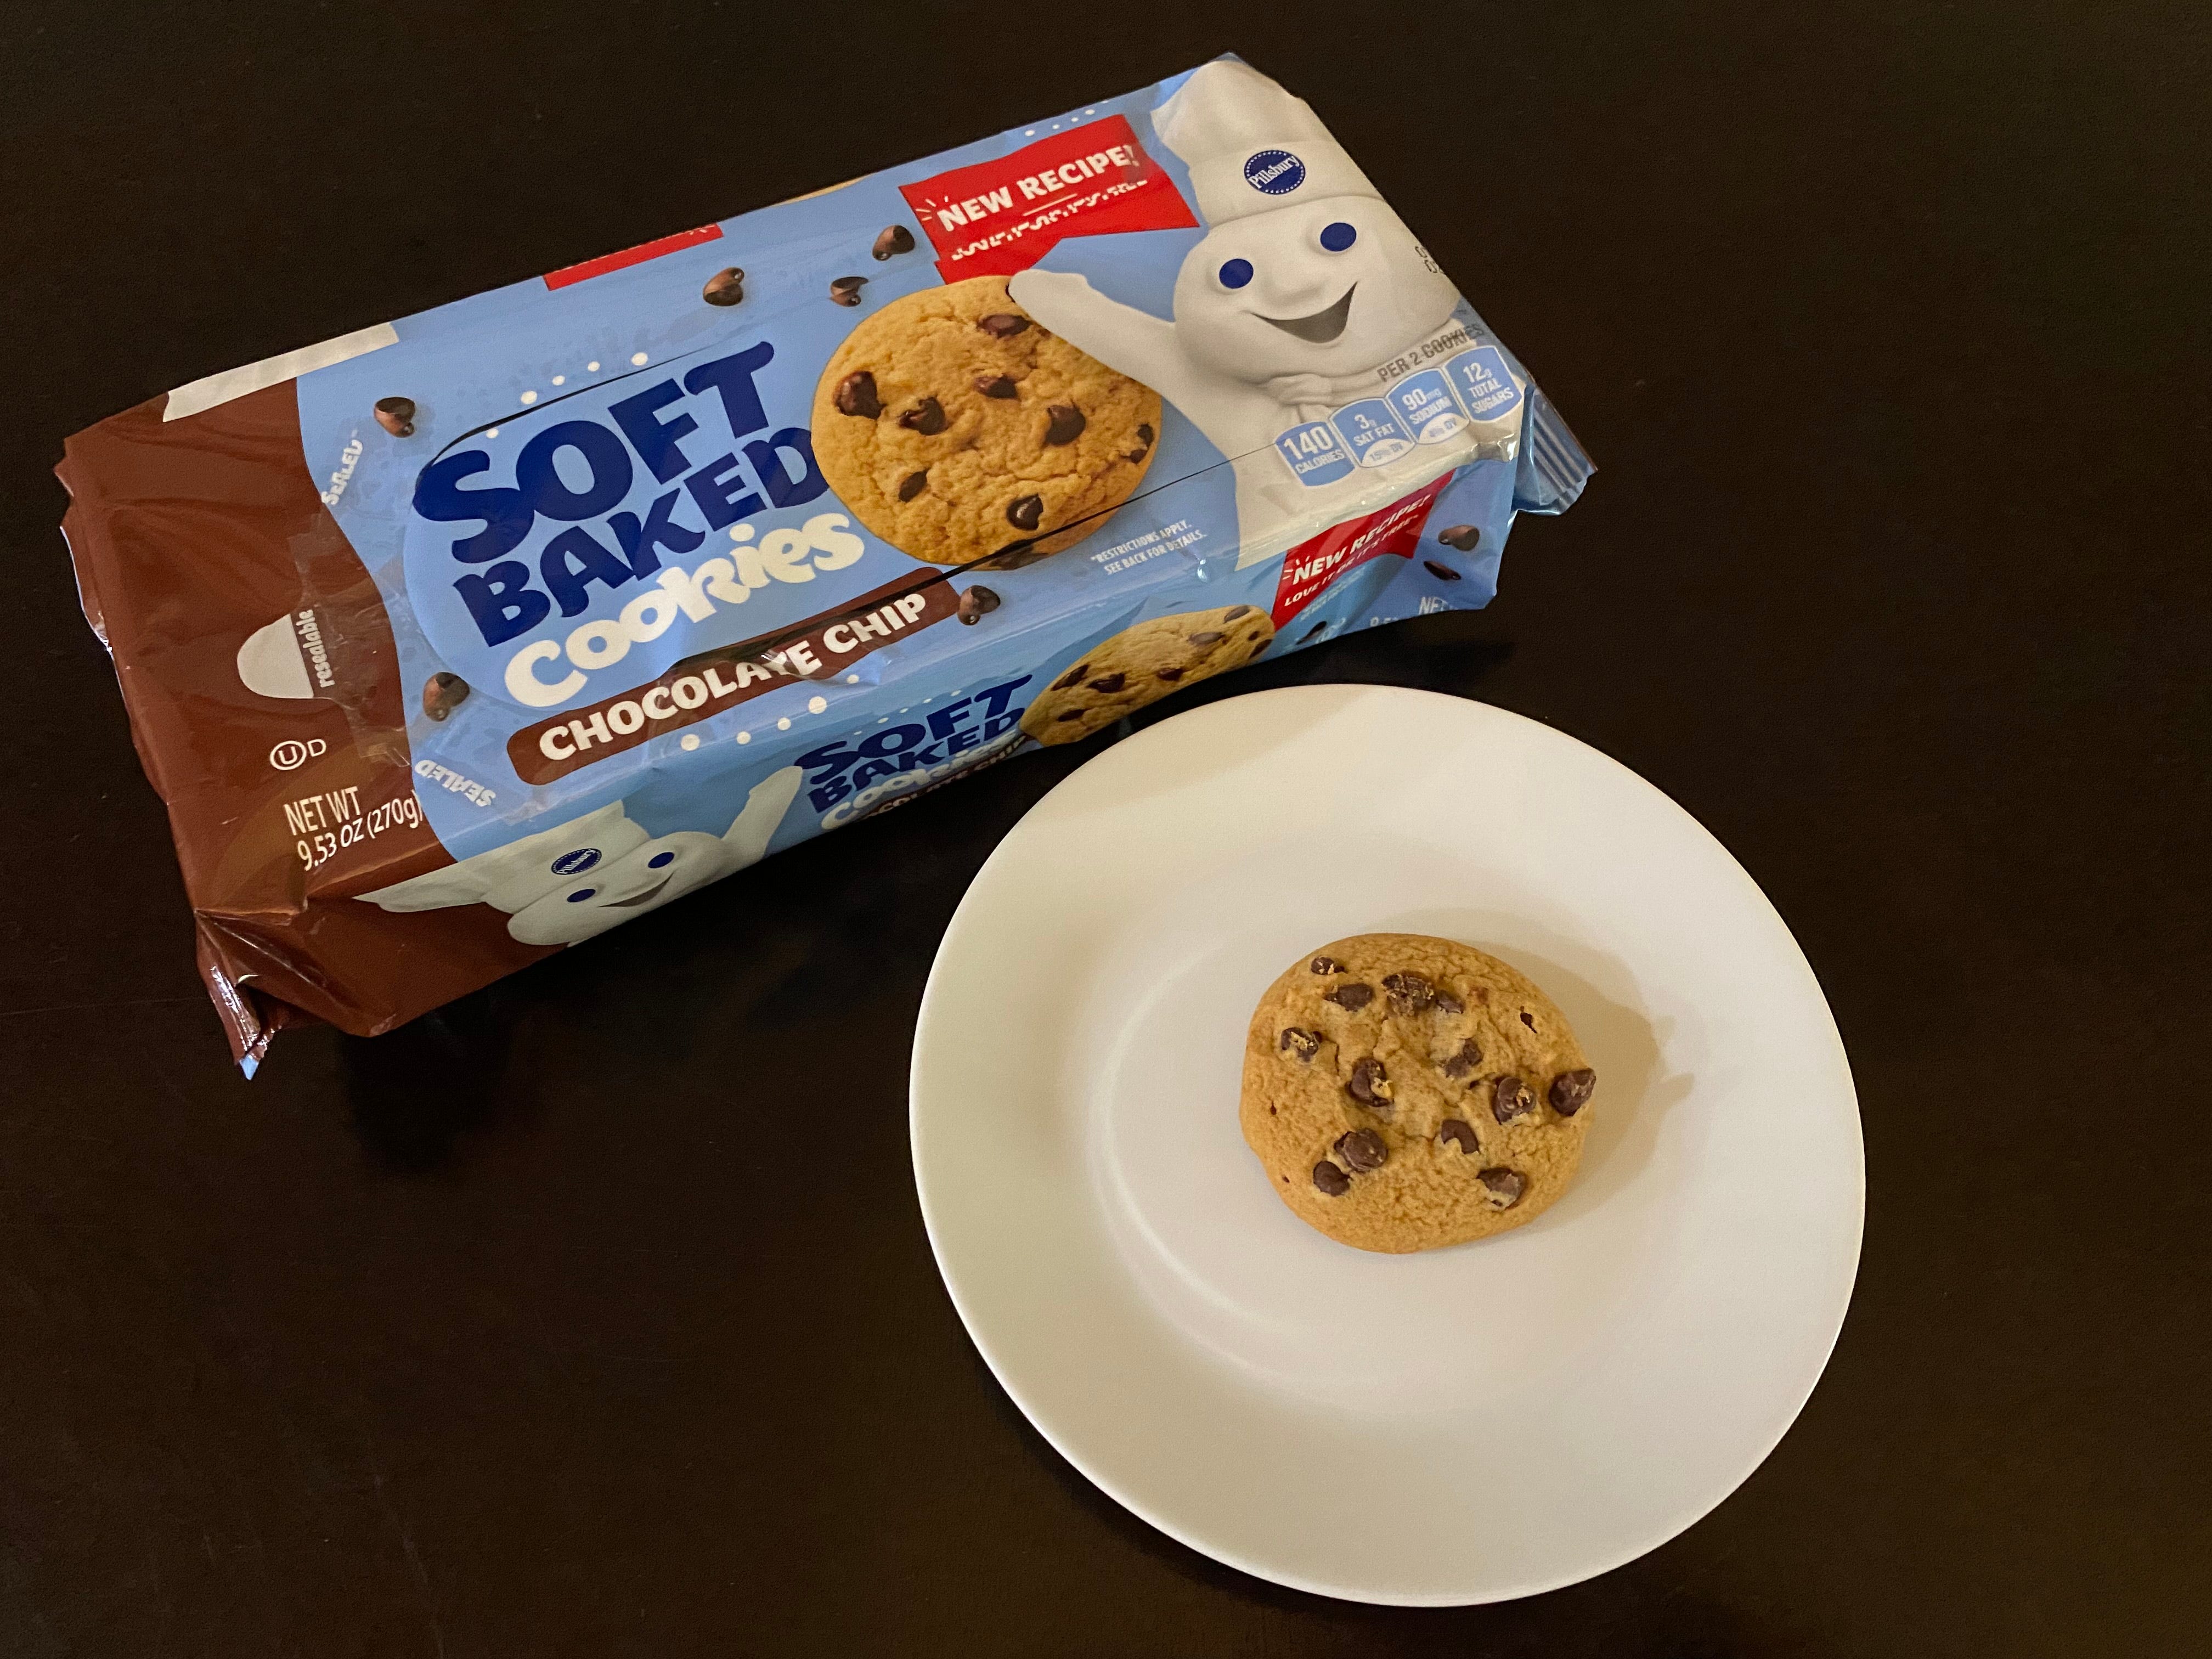 Paket von Pillsbury Chocolate Chip Cookies mit Cookie auf dem Teller vorne